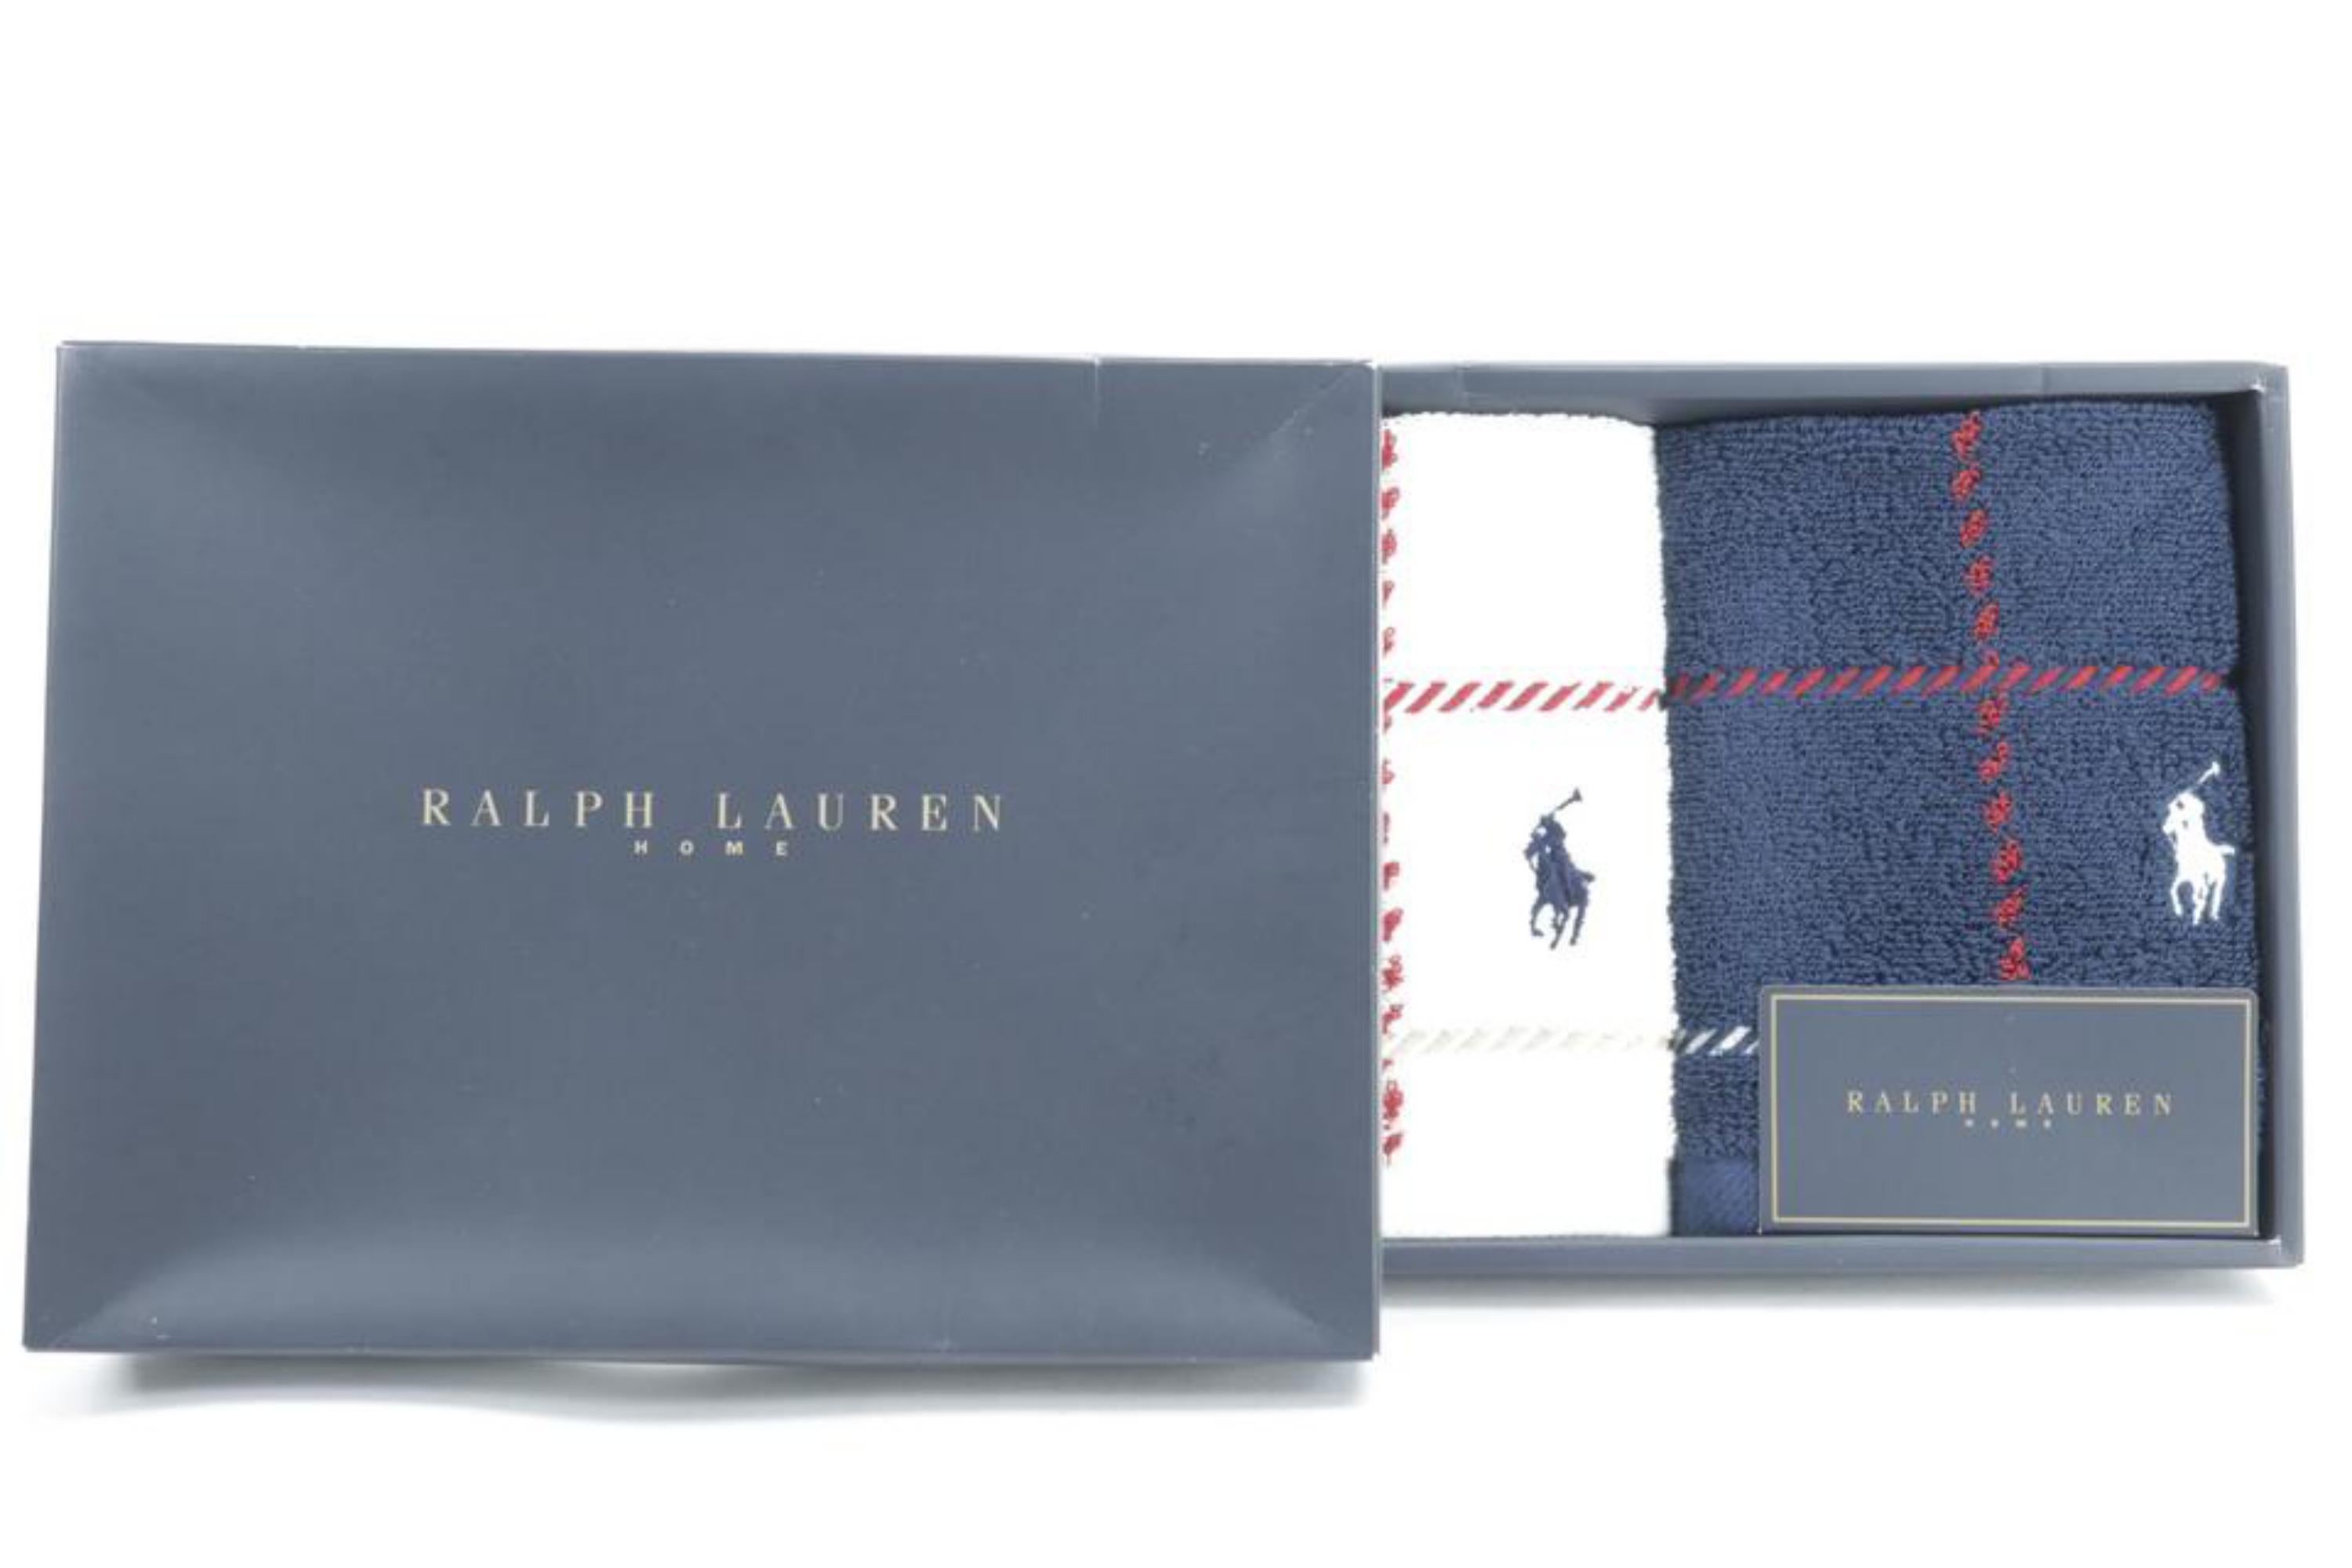 Ralph Lauren Polo Towel Set Navy 2M54a 7